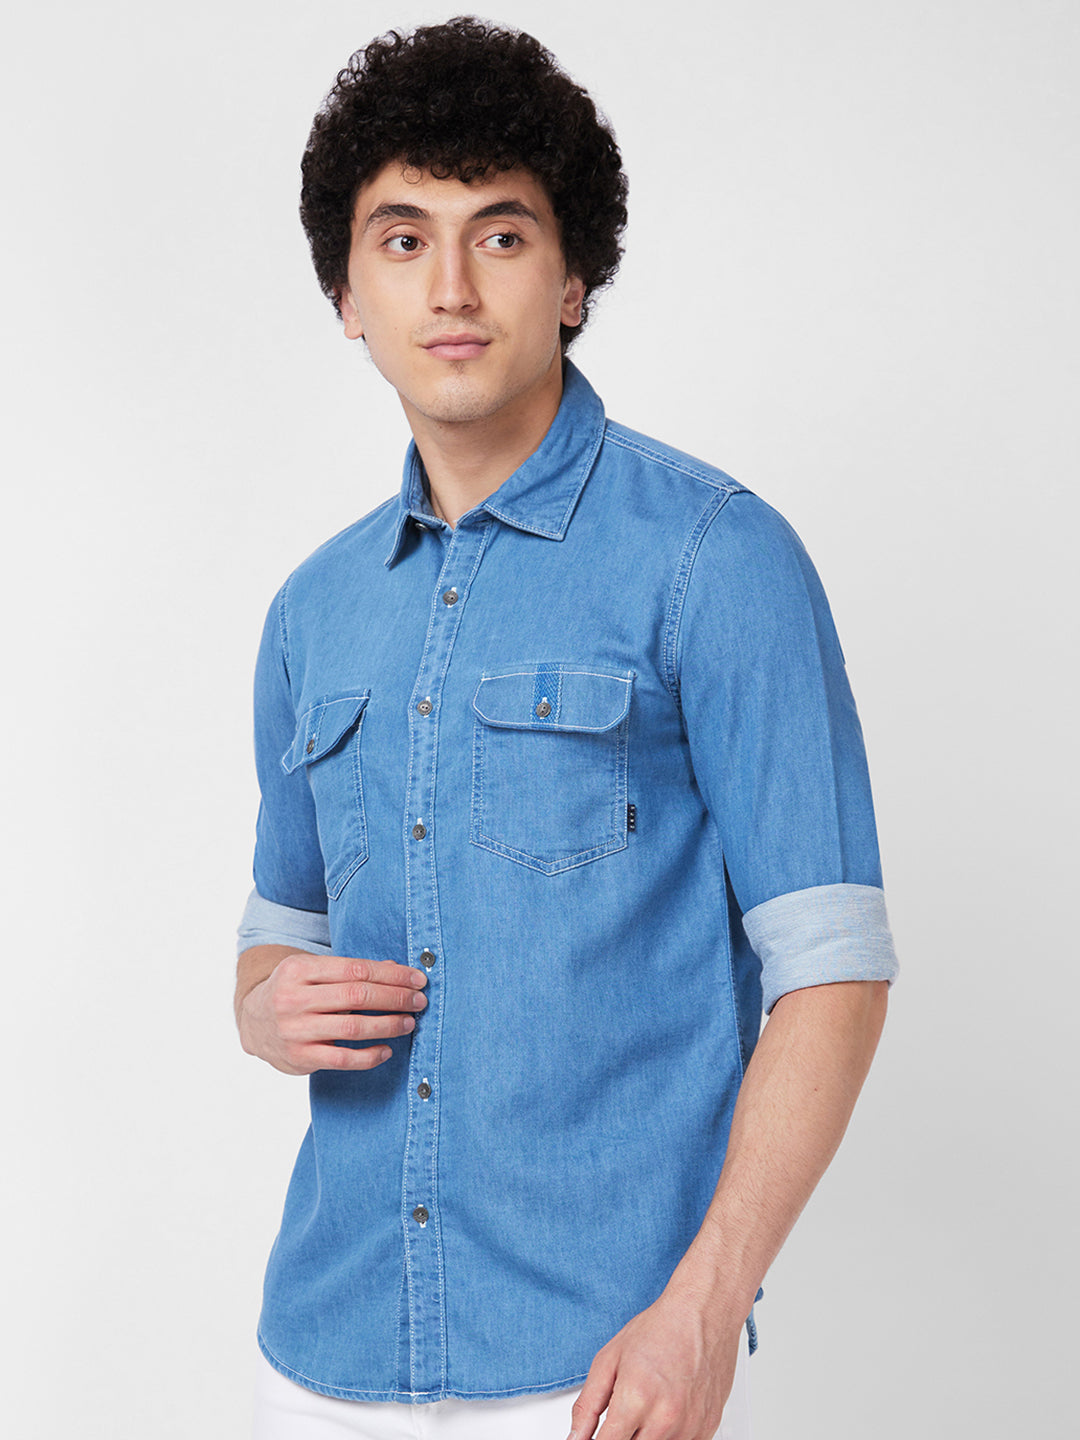 Spykar Blue Indigo Shirt For Men